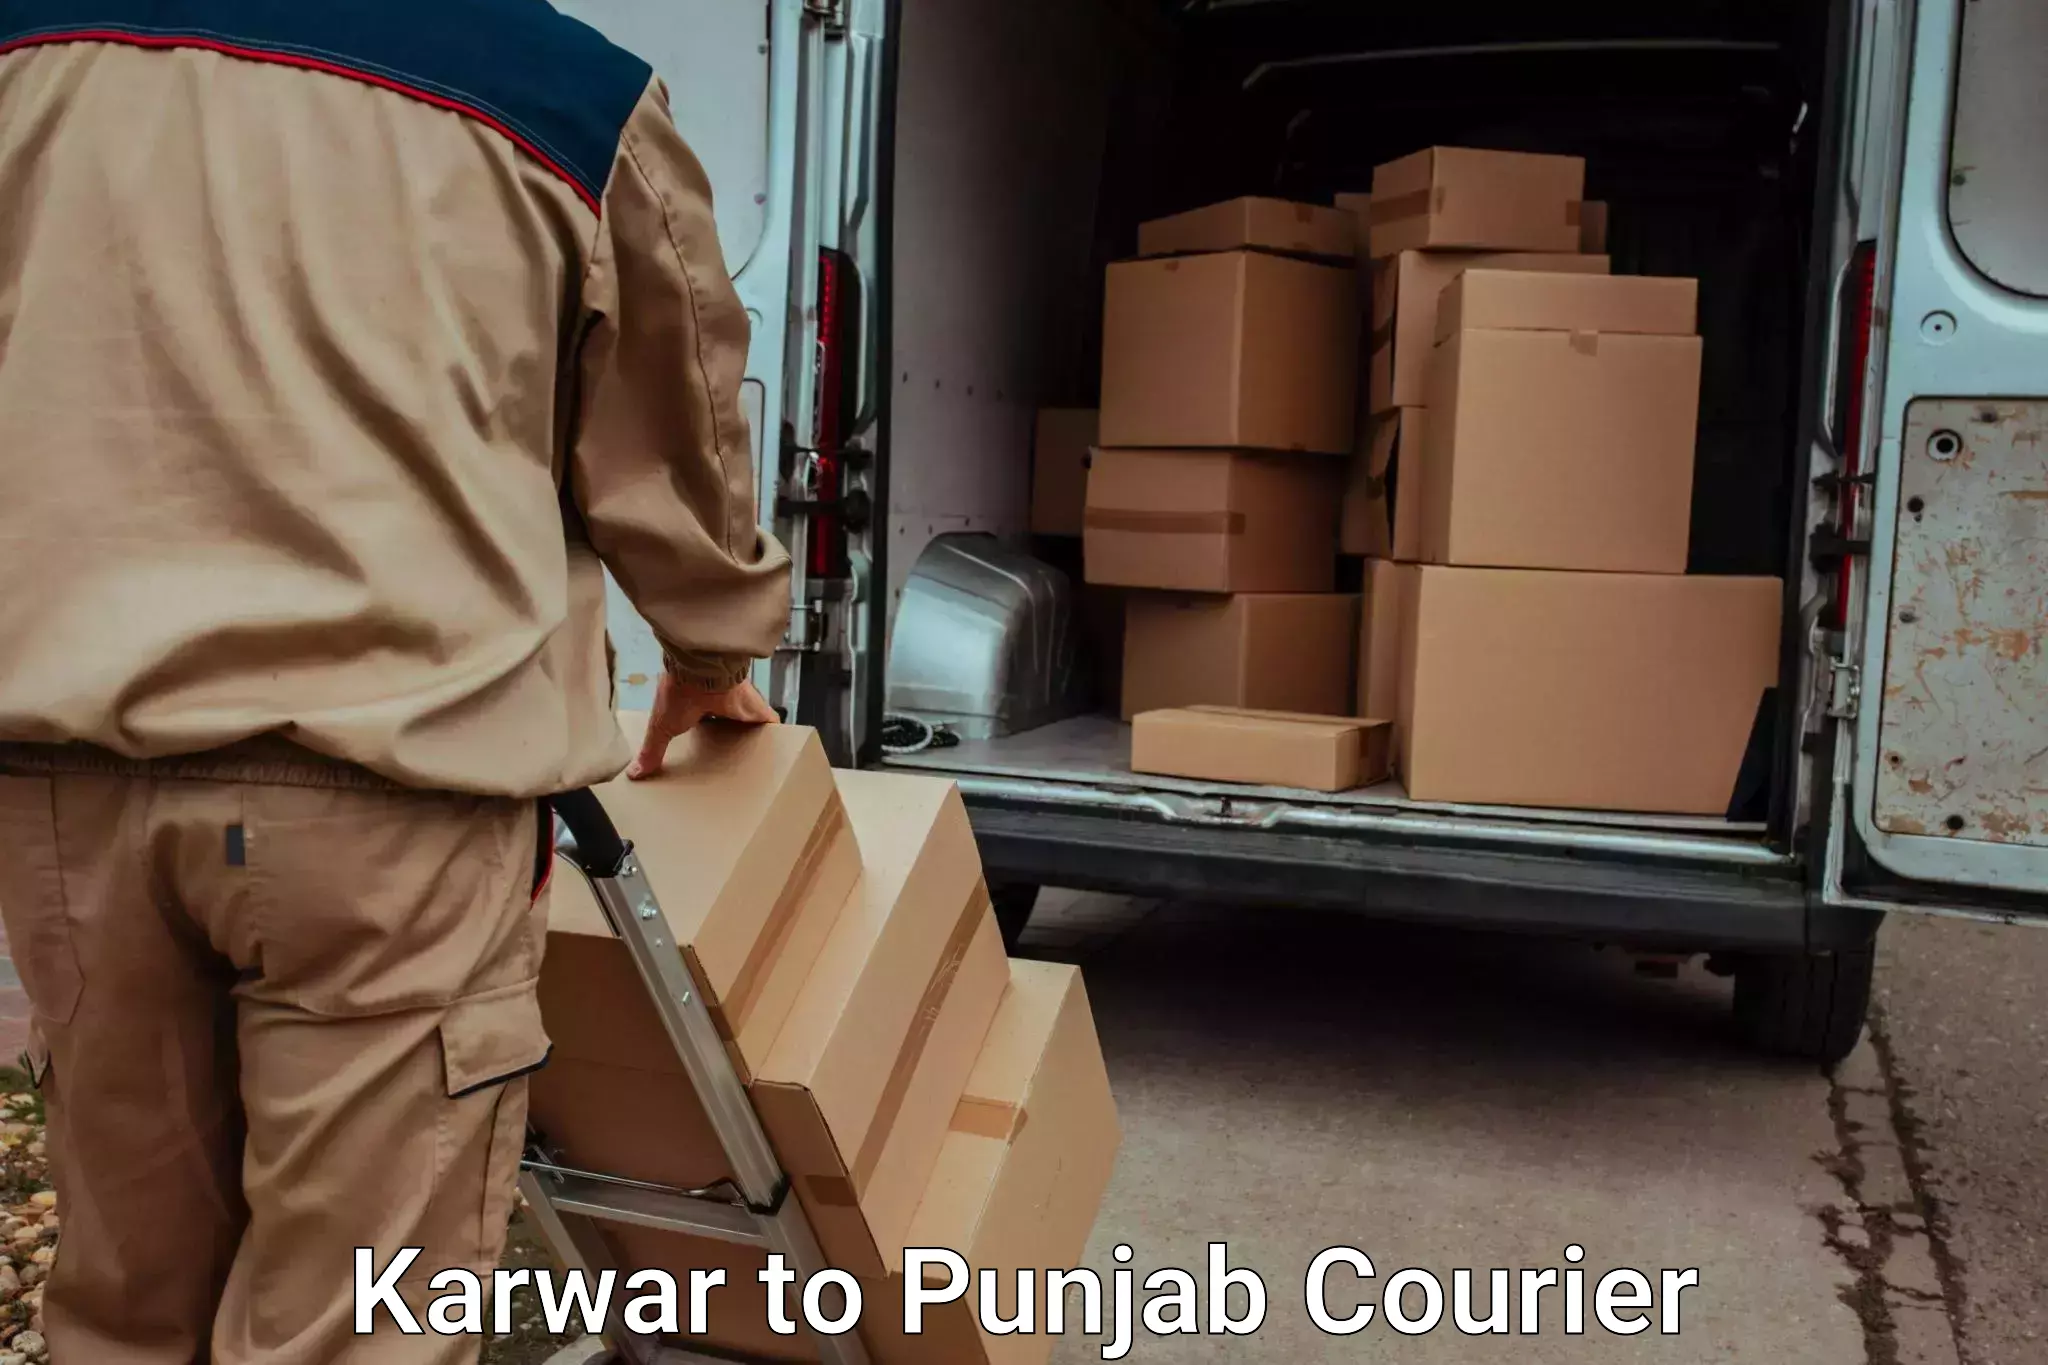 Baggage delivery technology Karwar to Punjab